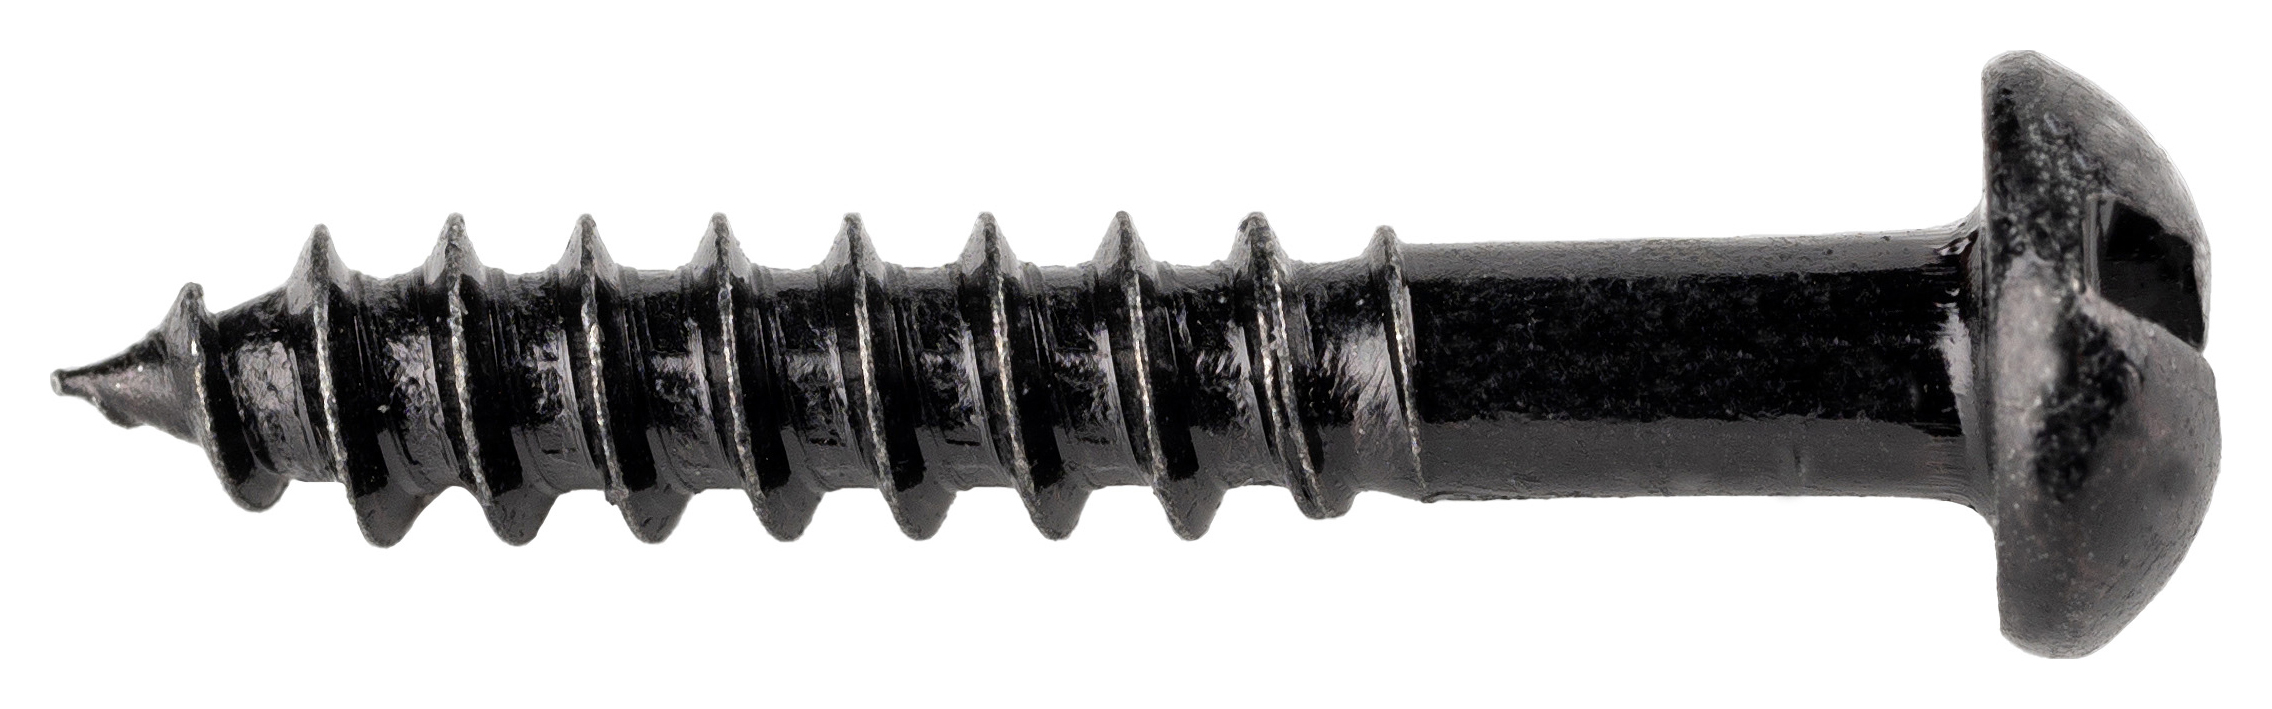 Wickes Black Japanned Wood Screws - 4 x 25mm - Pack of 25